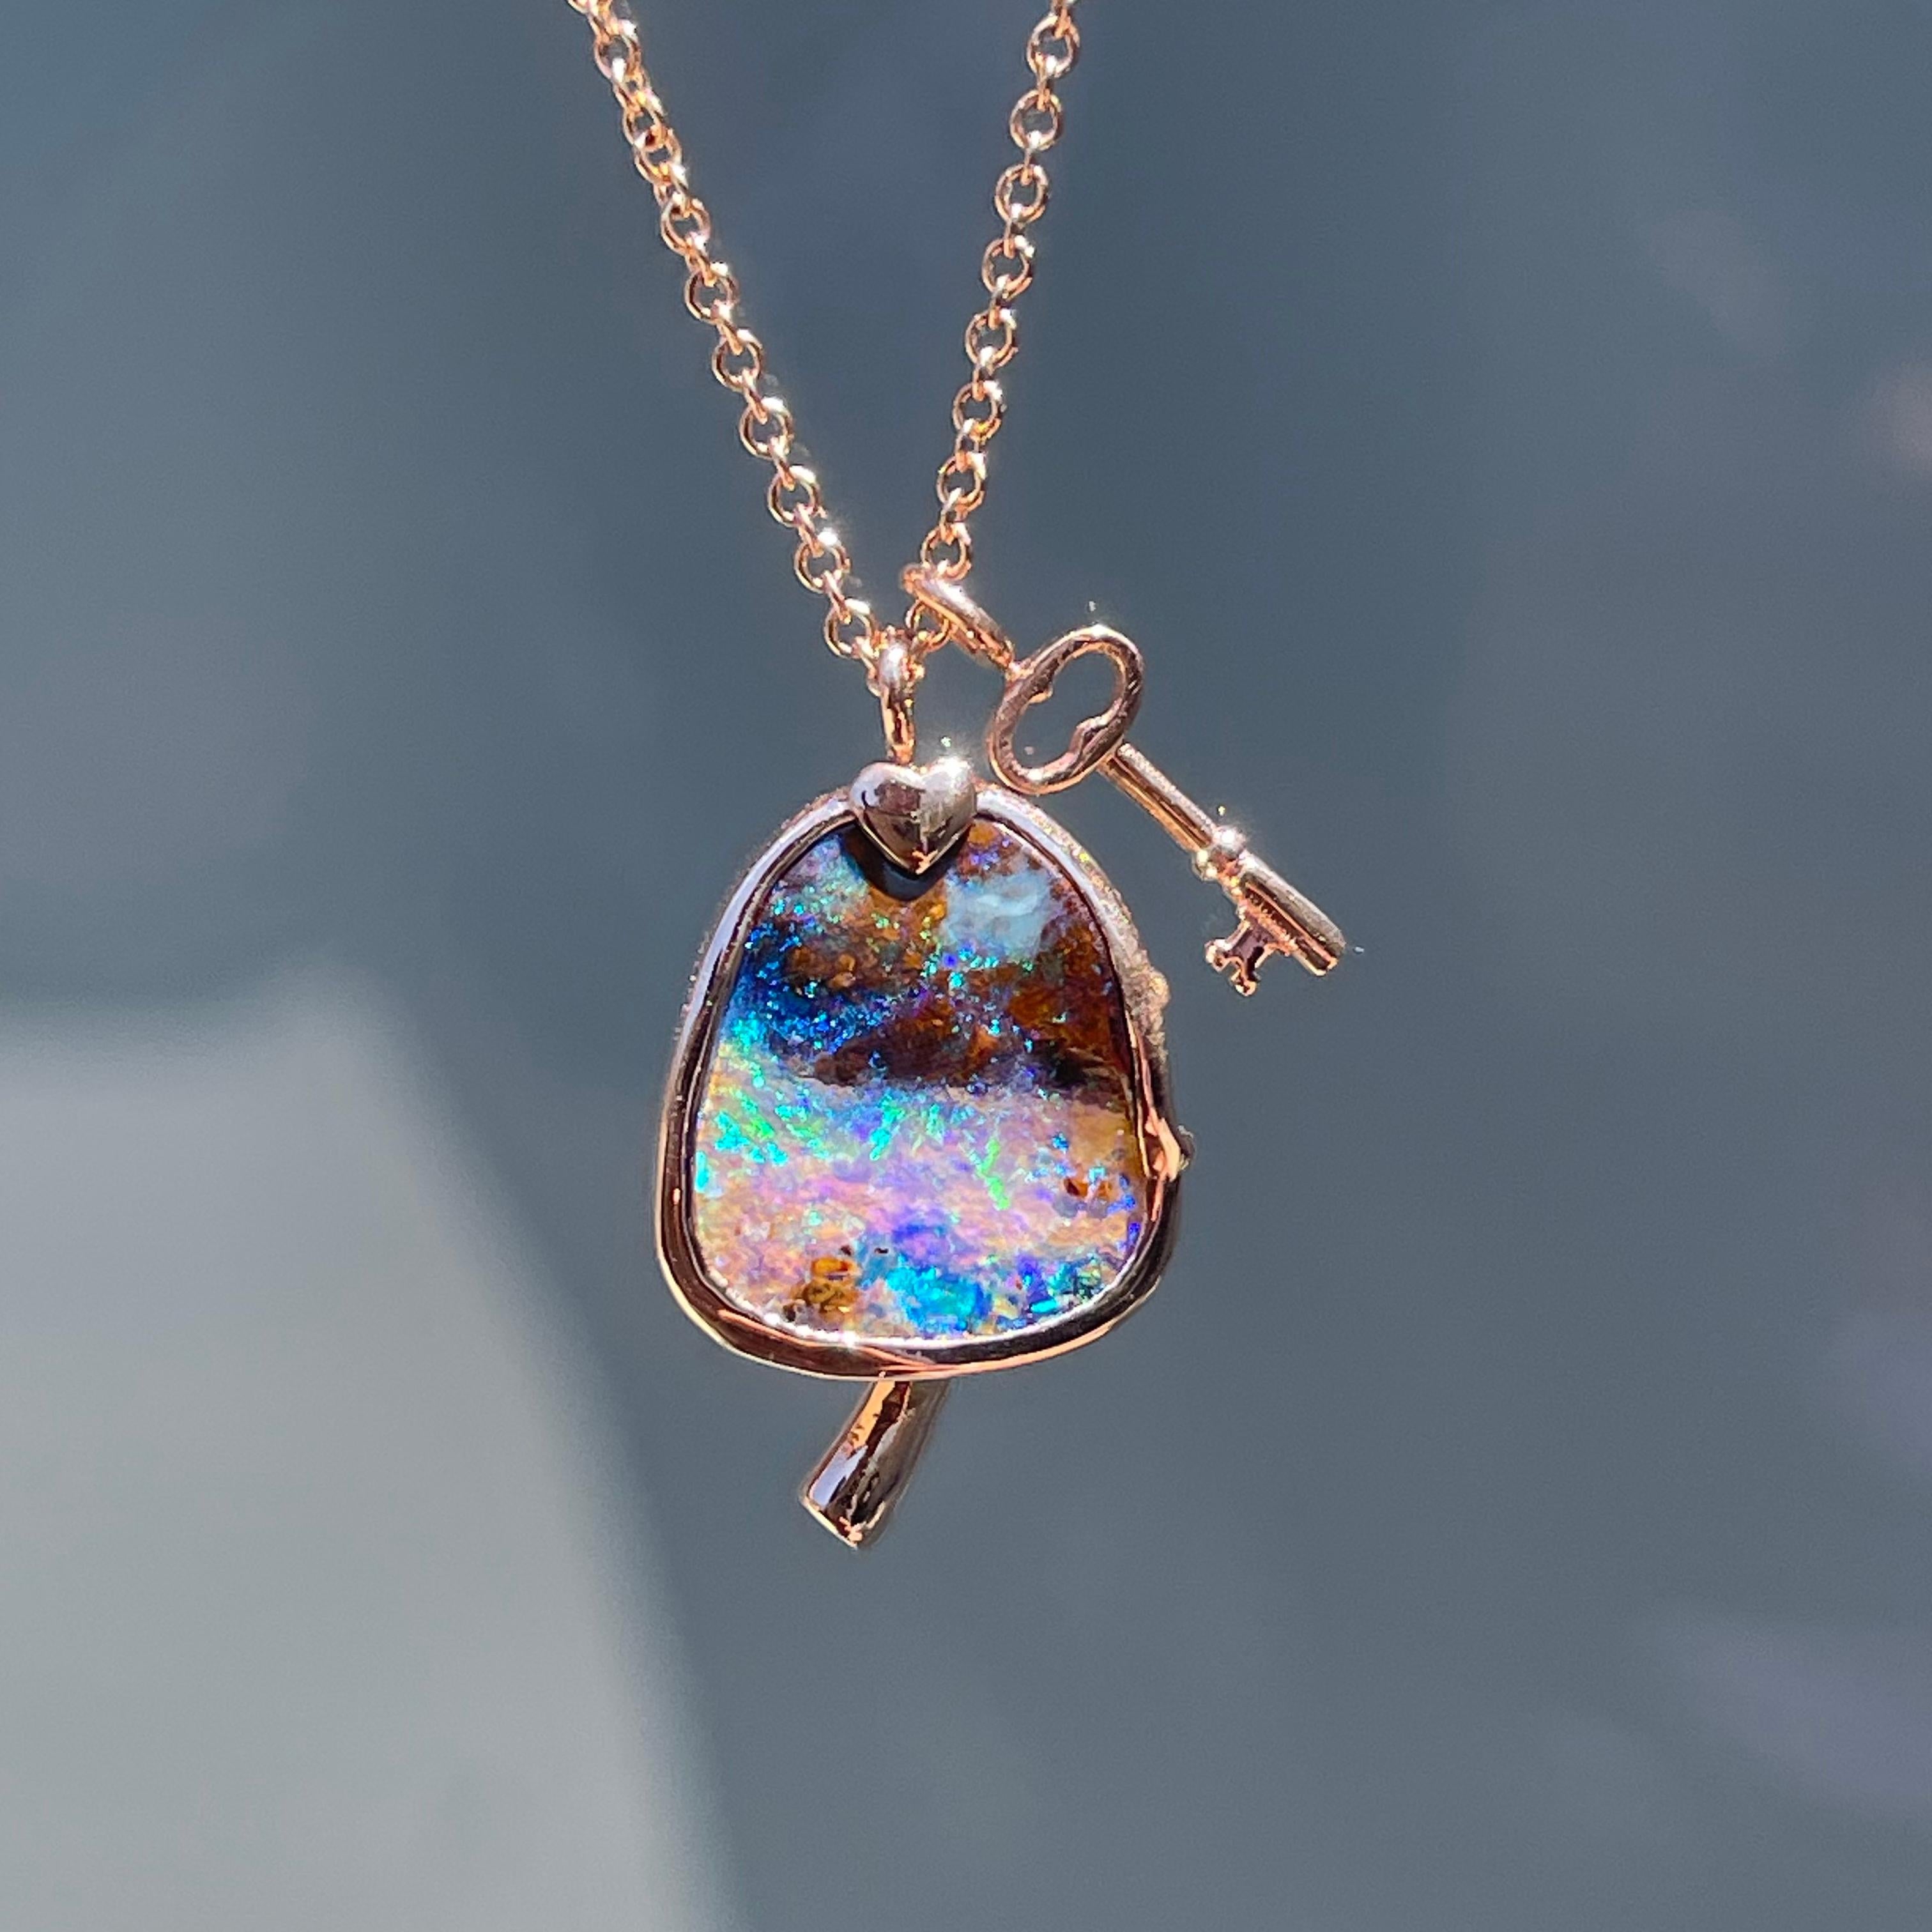 In dieser Halskette aus australischem Opal schwingt die Fantasie mit und die Alchemie manifestiert sich. Der illusorische Boulder Opal zaubert Grün- und Blautöne, die über seine Pilzkappe pulsieren. Ein funkelnder Smaragd verschließt den Stiel, der